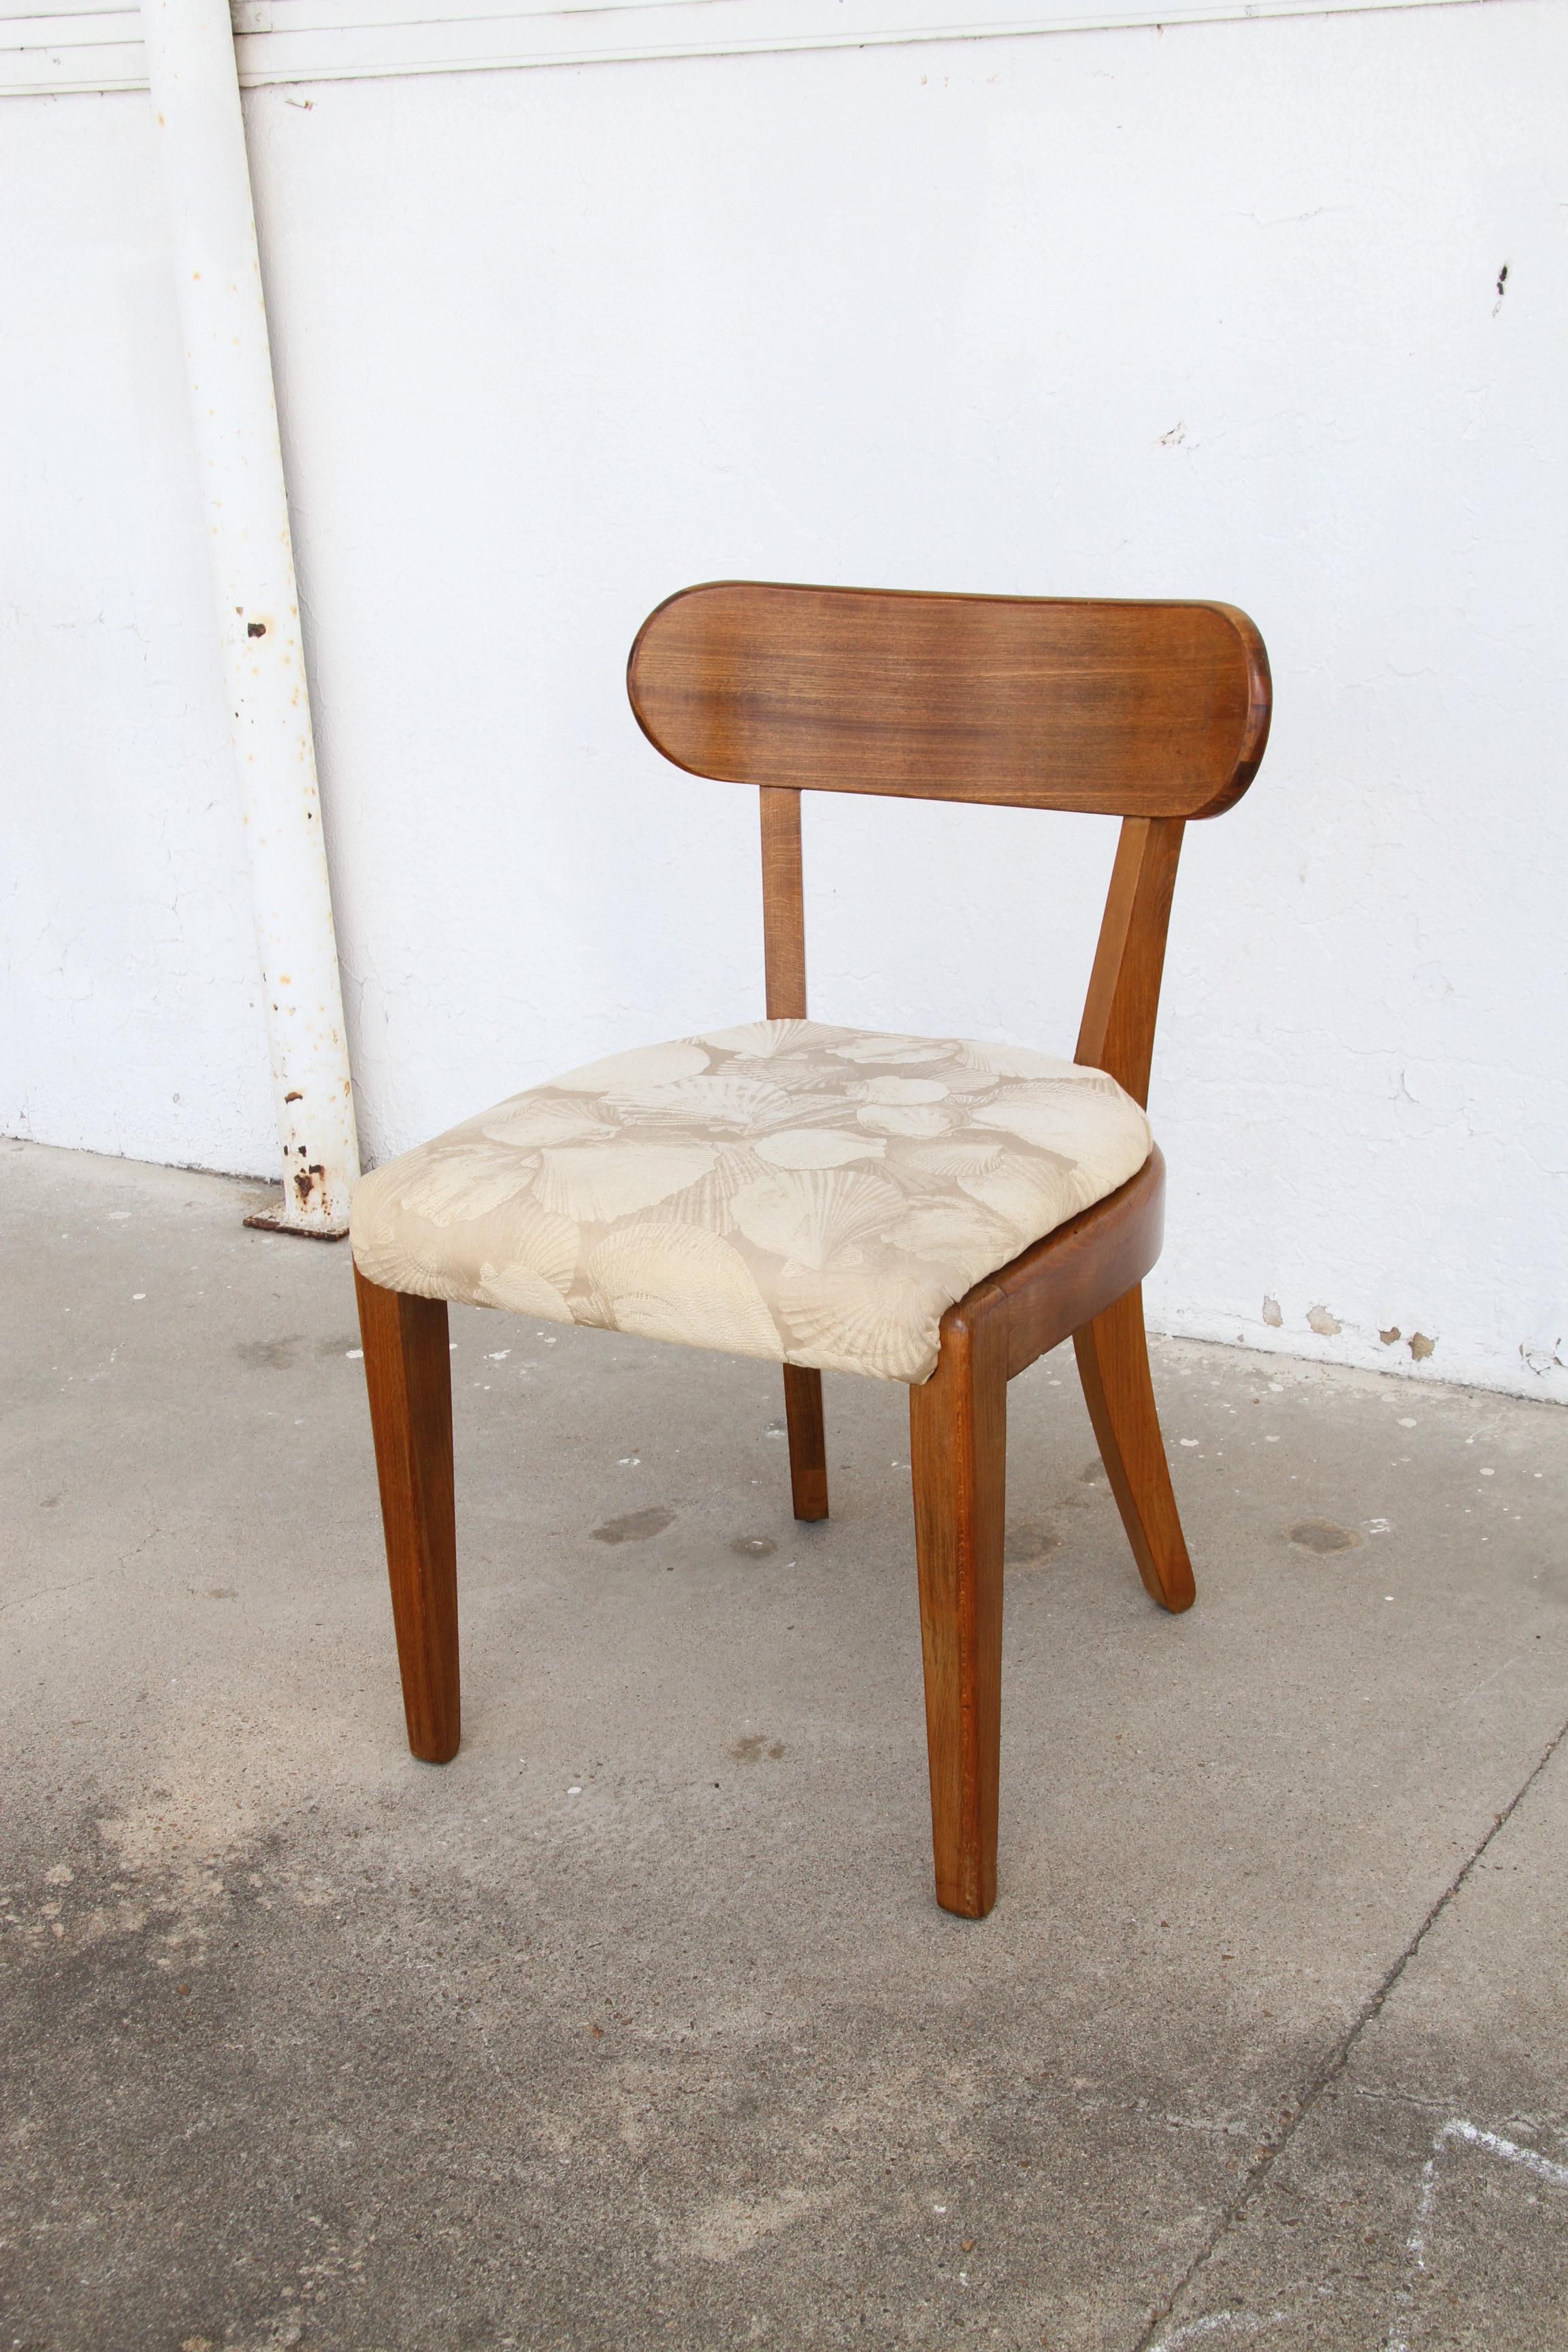 Edward Wormley entwarf 1947 für die Precedent Side Chairs der Serie 239-4.
6 Stühle für den Essbereich, Massivholzkonstruktion, naturbelassen.


Abmessungen:
Höhe: 30 Zoll
Breite: 19 Zoll
Tiefe: 21 Zoll
Sitzhöhe: 18 Zoll  